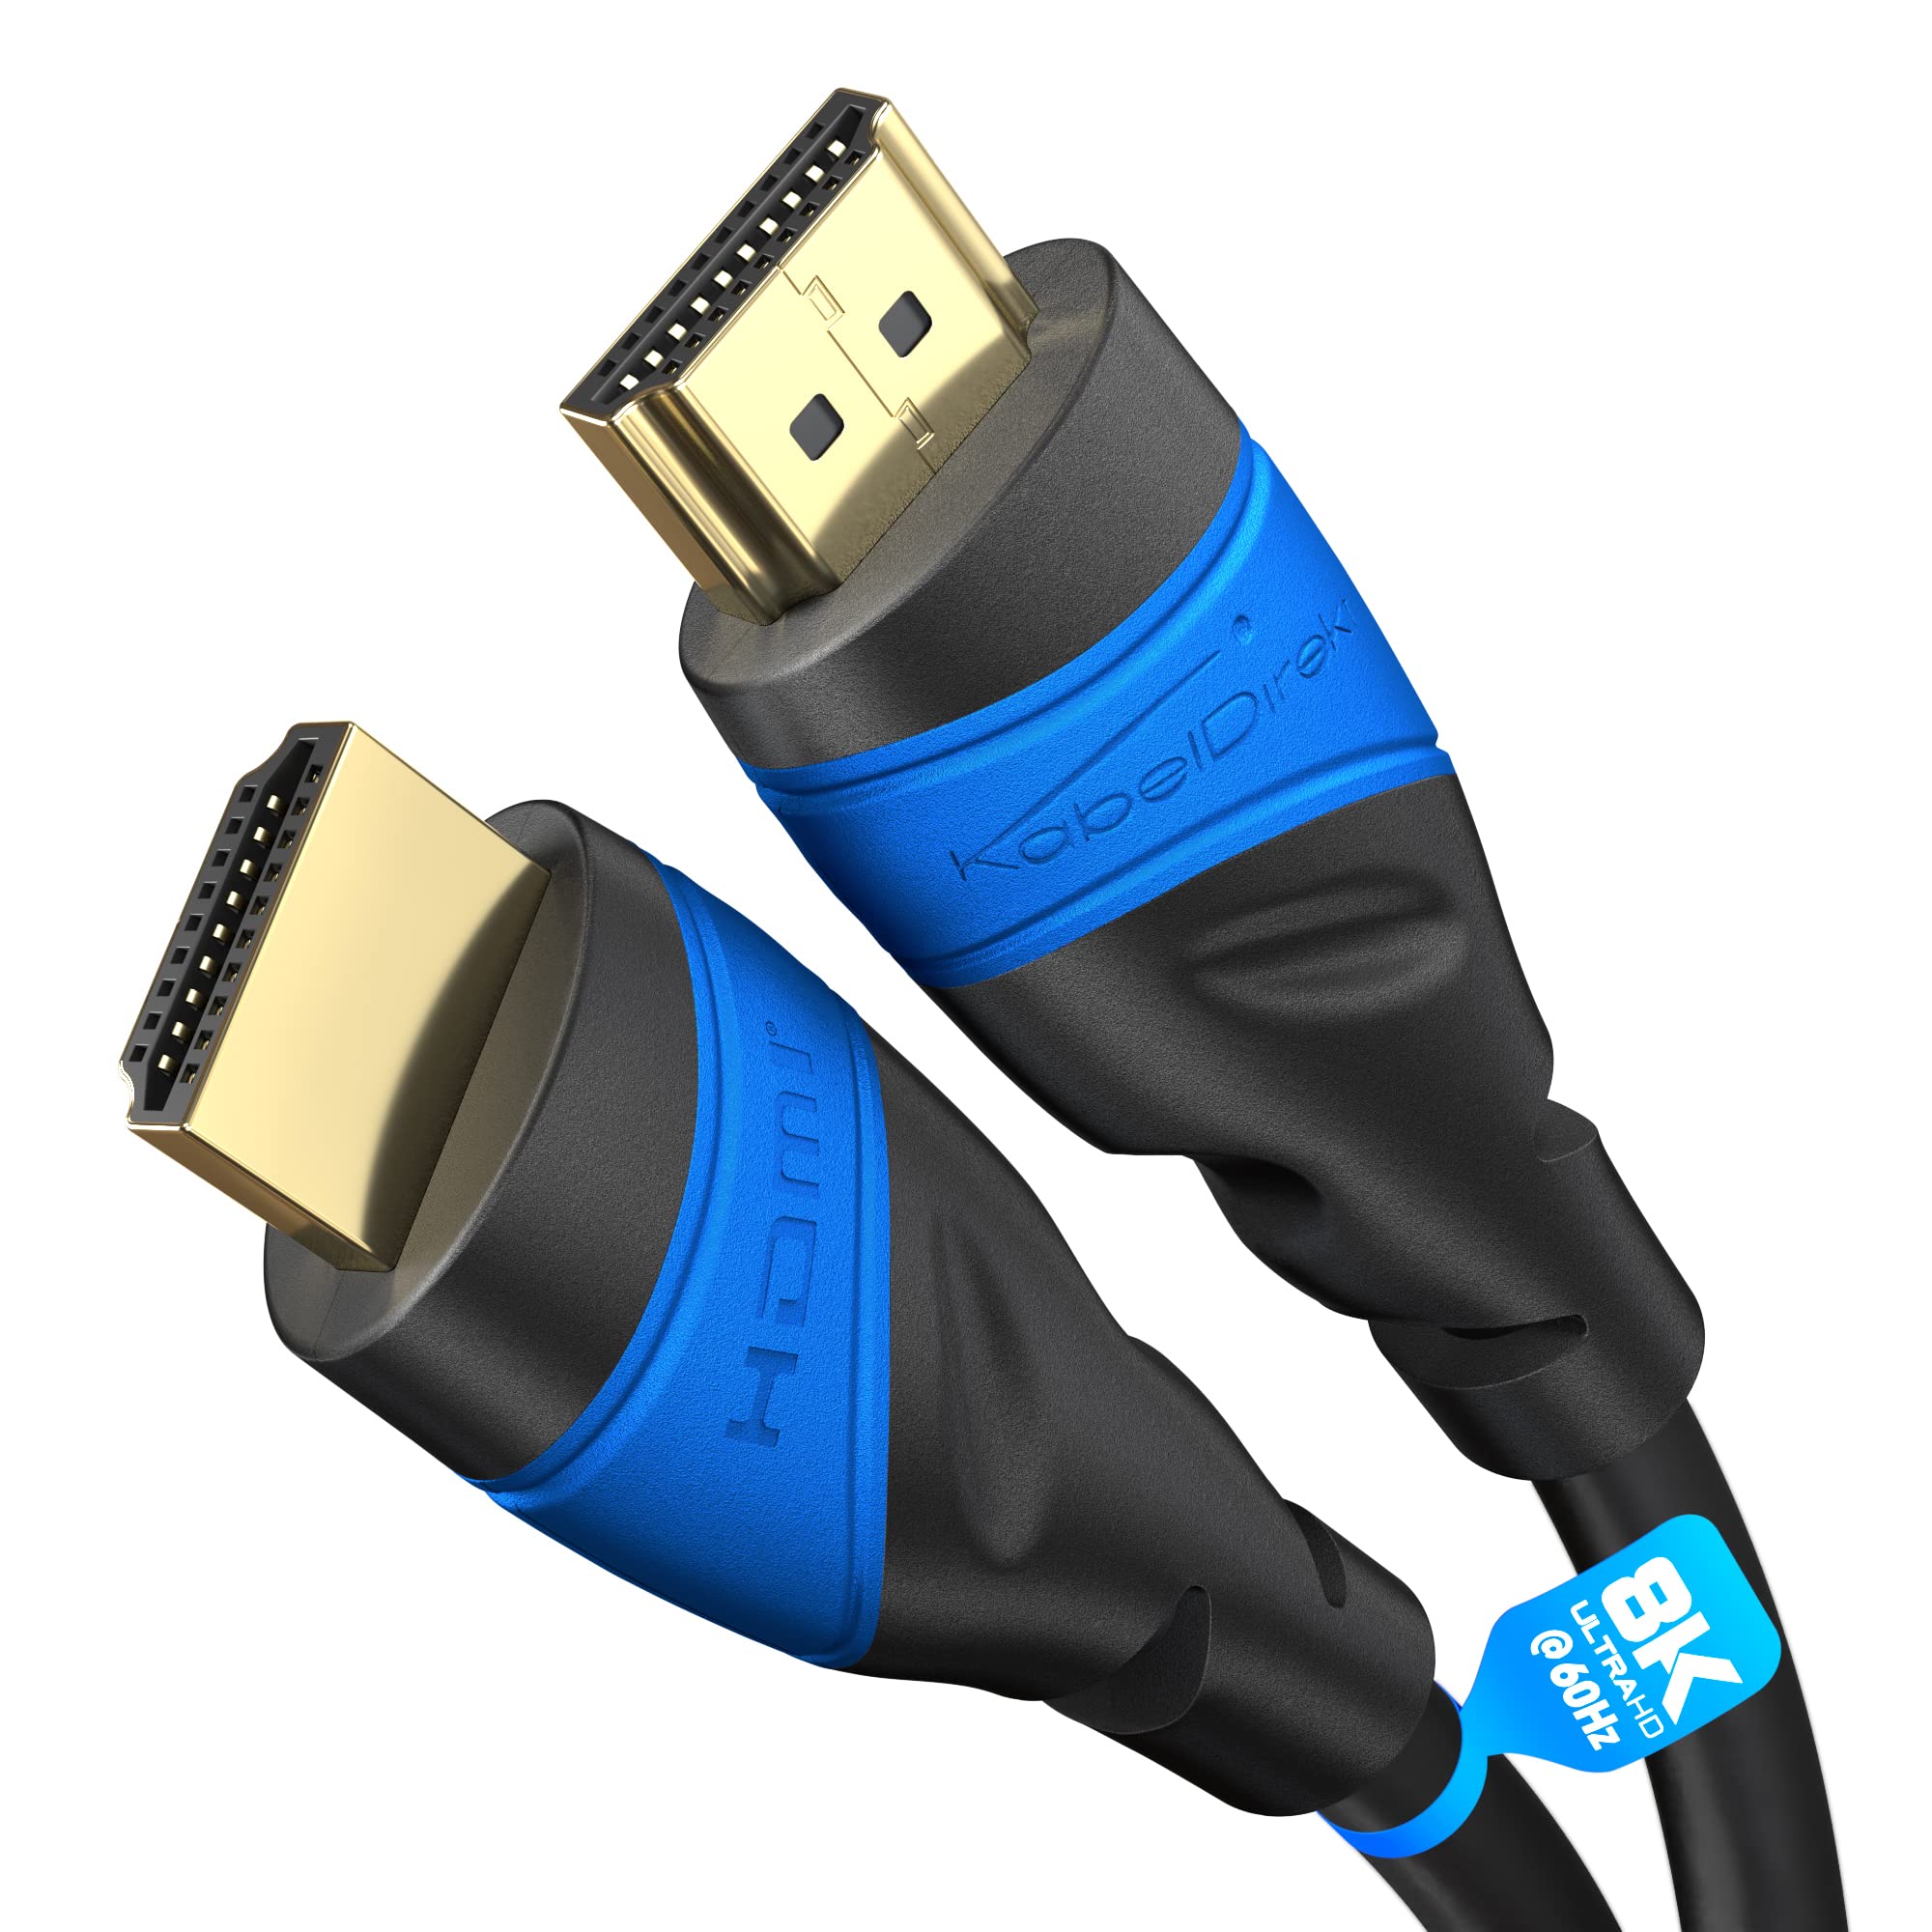 Gaming-Mäuse für optimale Leistung
HDMI-Kabel für eine verbesserte Bild- und Tonqualität